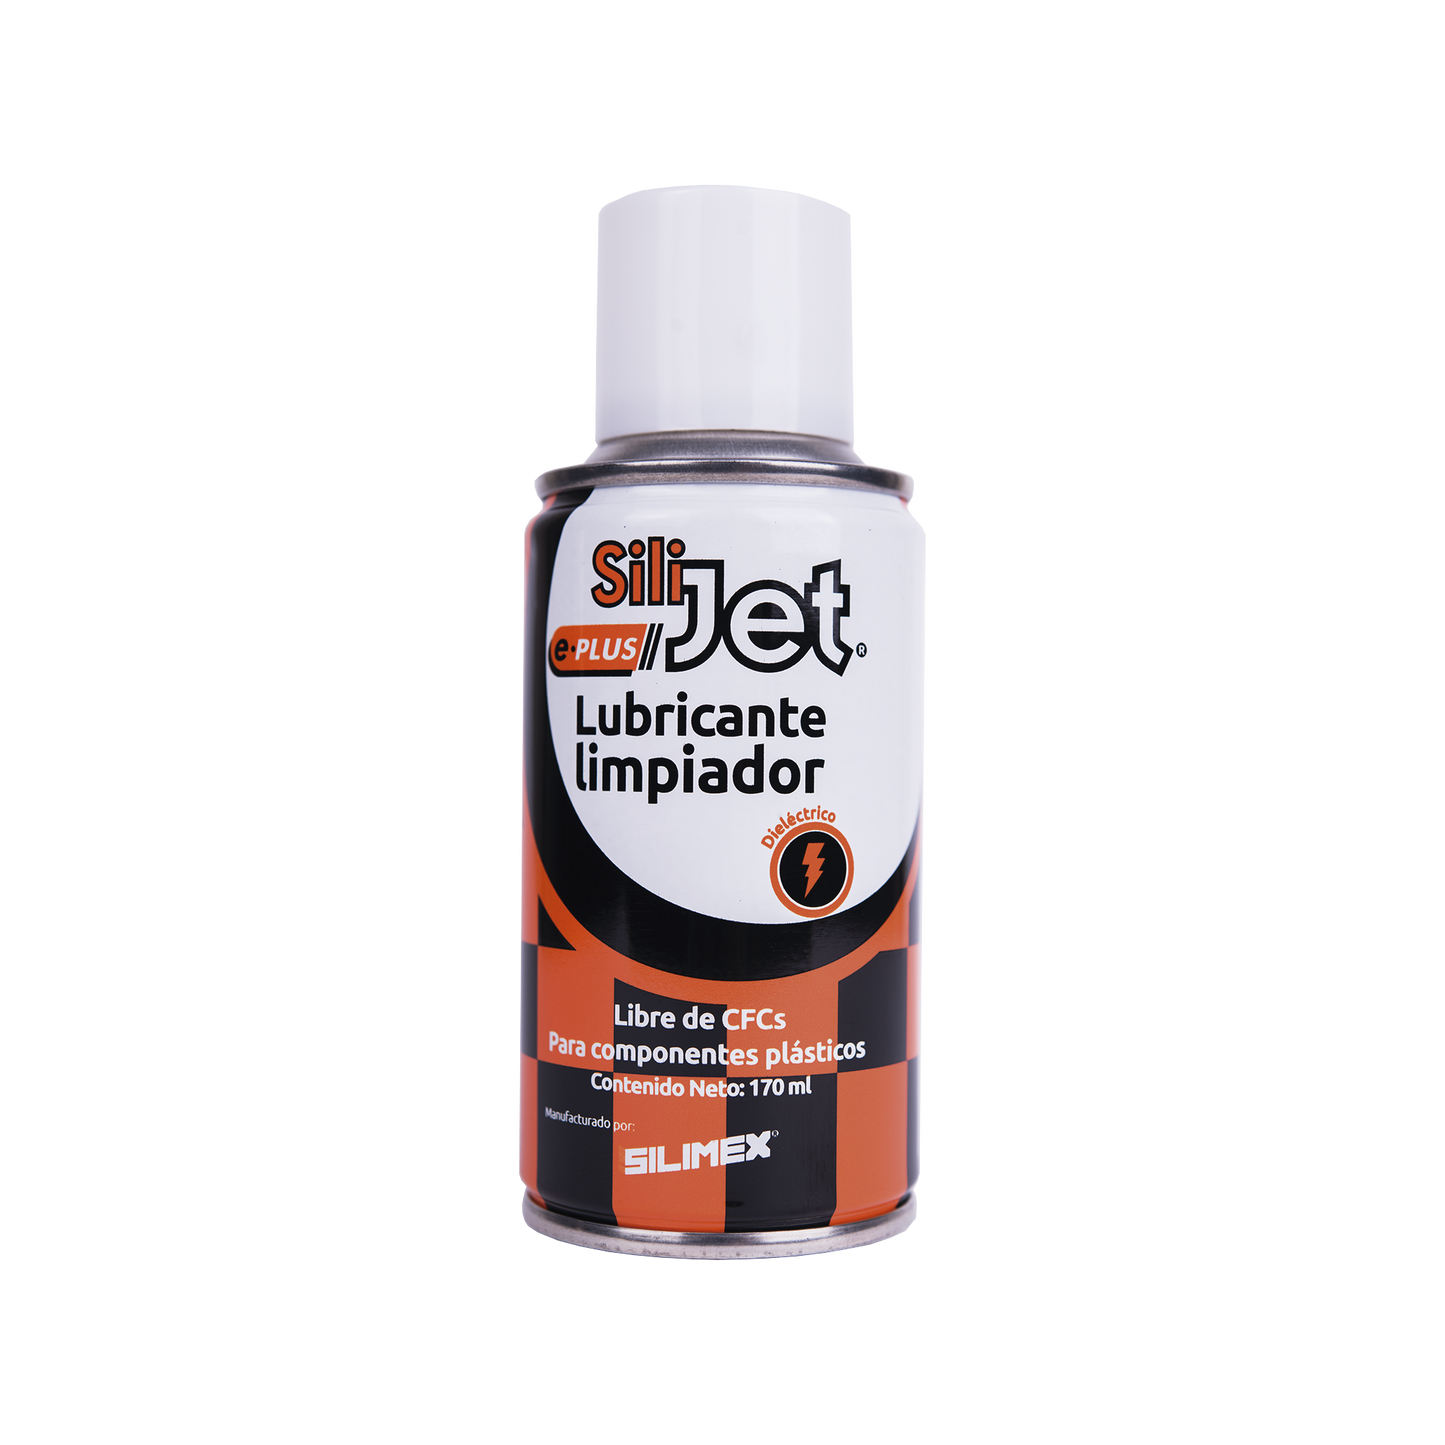 Limpiador lubricante en aerosol dieléctrico,  protege mecanismos, circuitos, sensores, ventiladores, 170 ml.